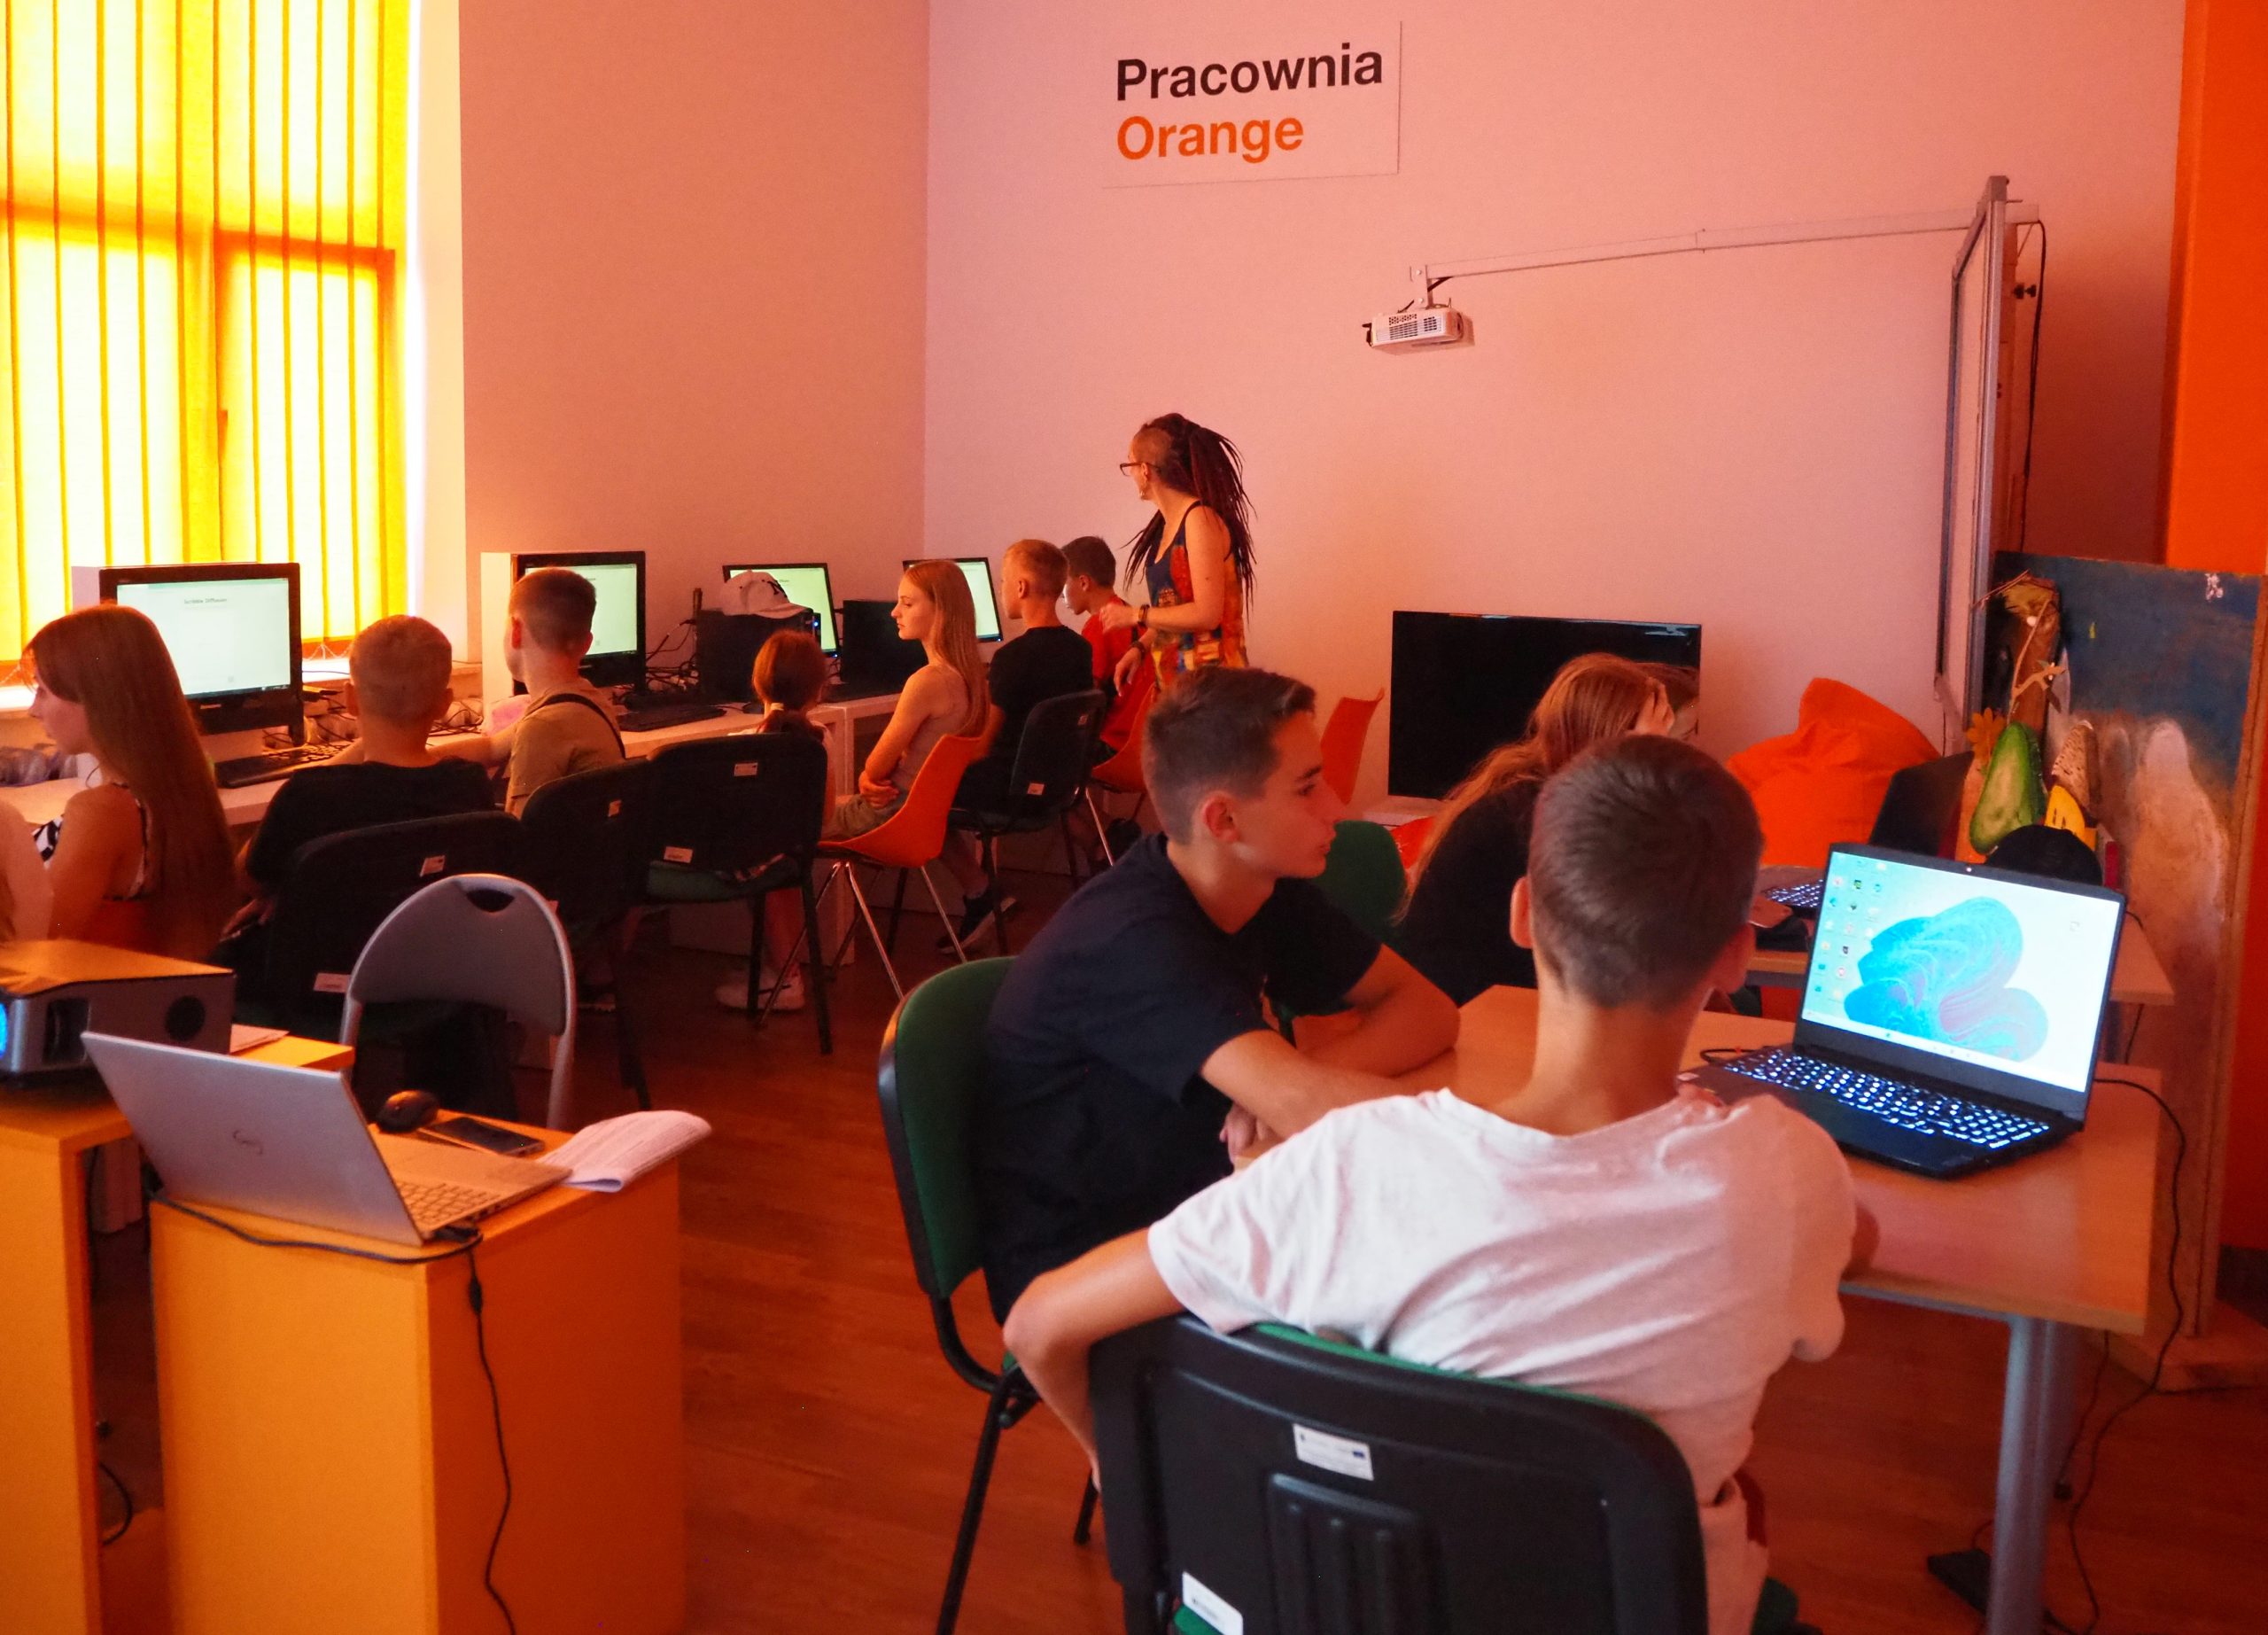 grupa osób w pracowni orange siedzi przy komputerach